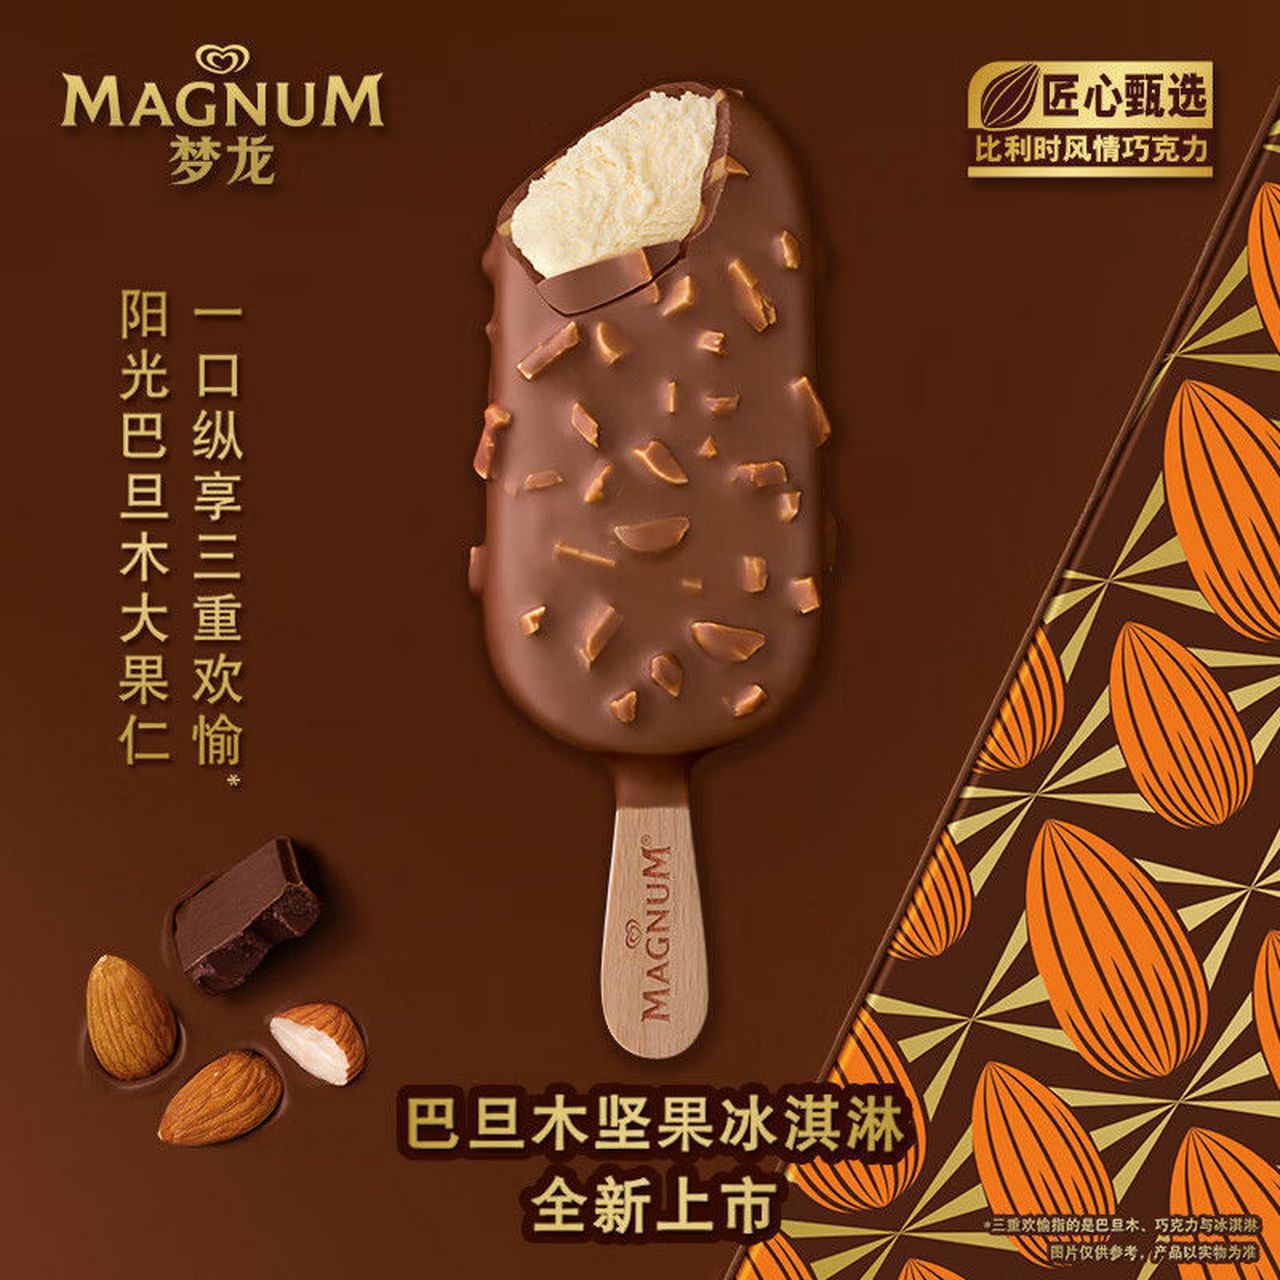 梦龙冰淇淋宣传广告图片